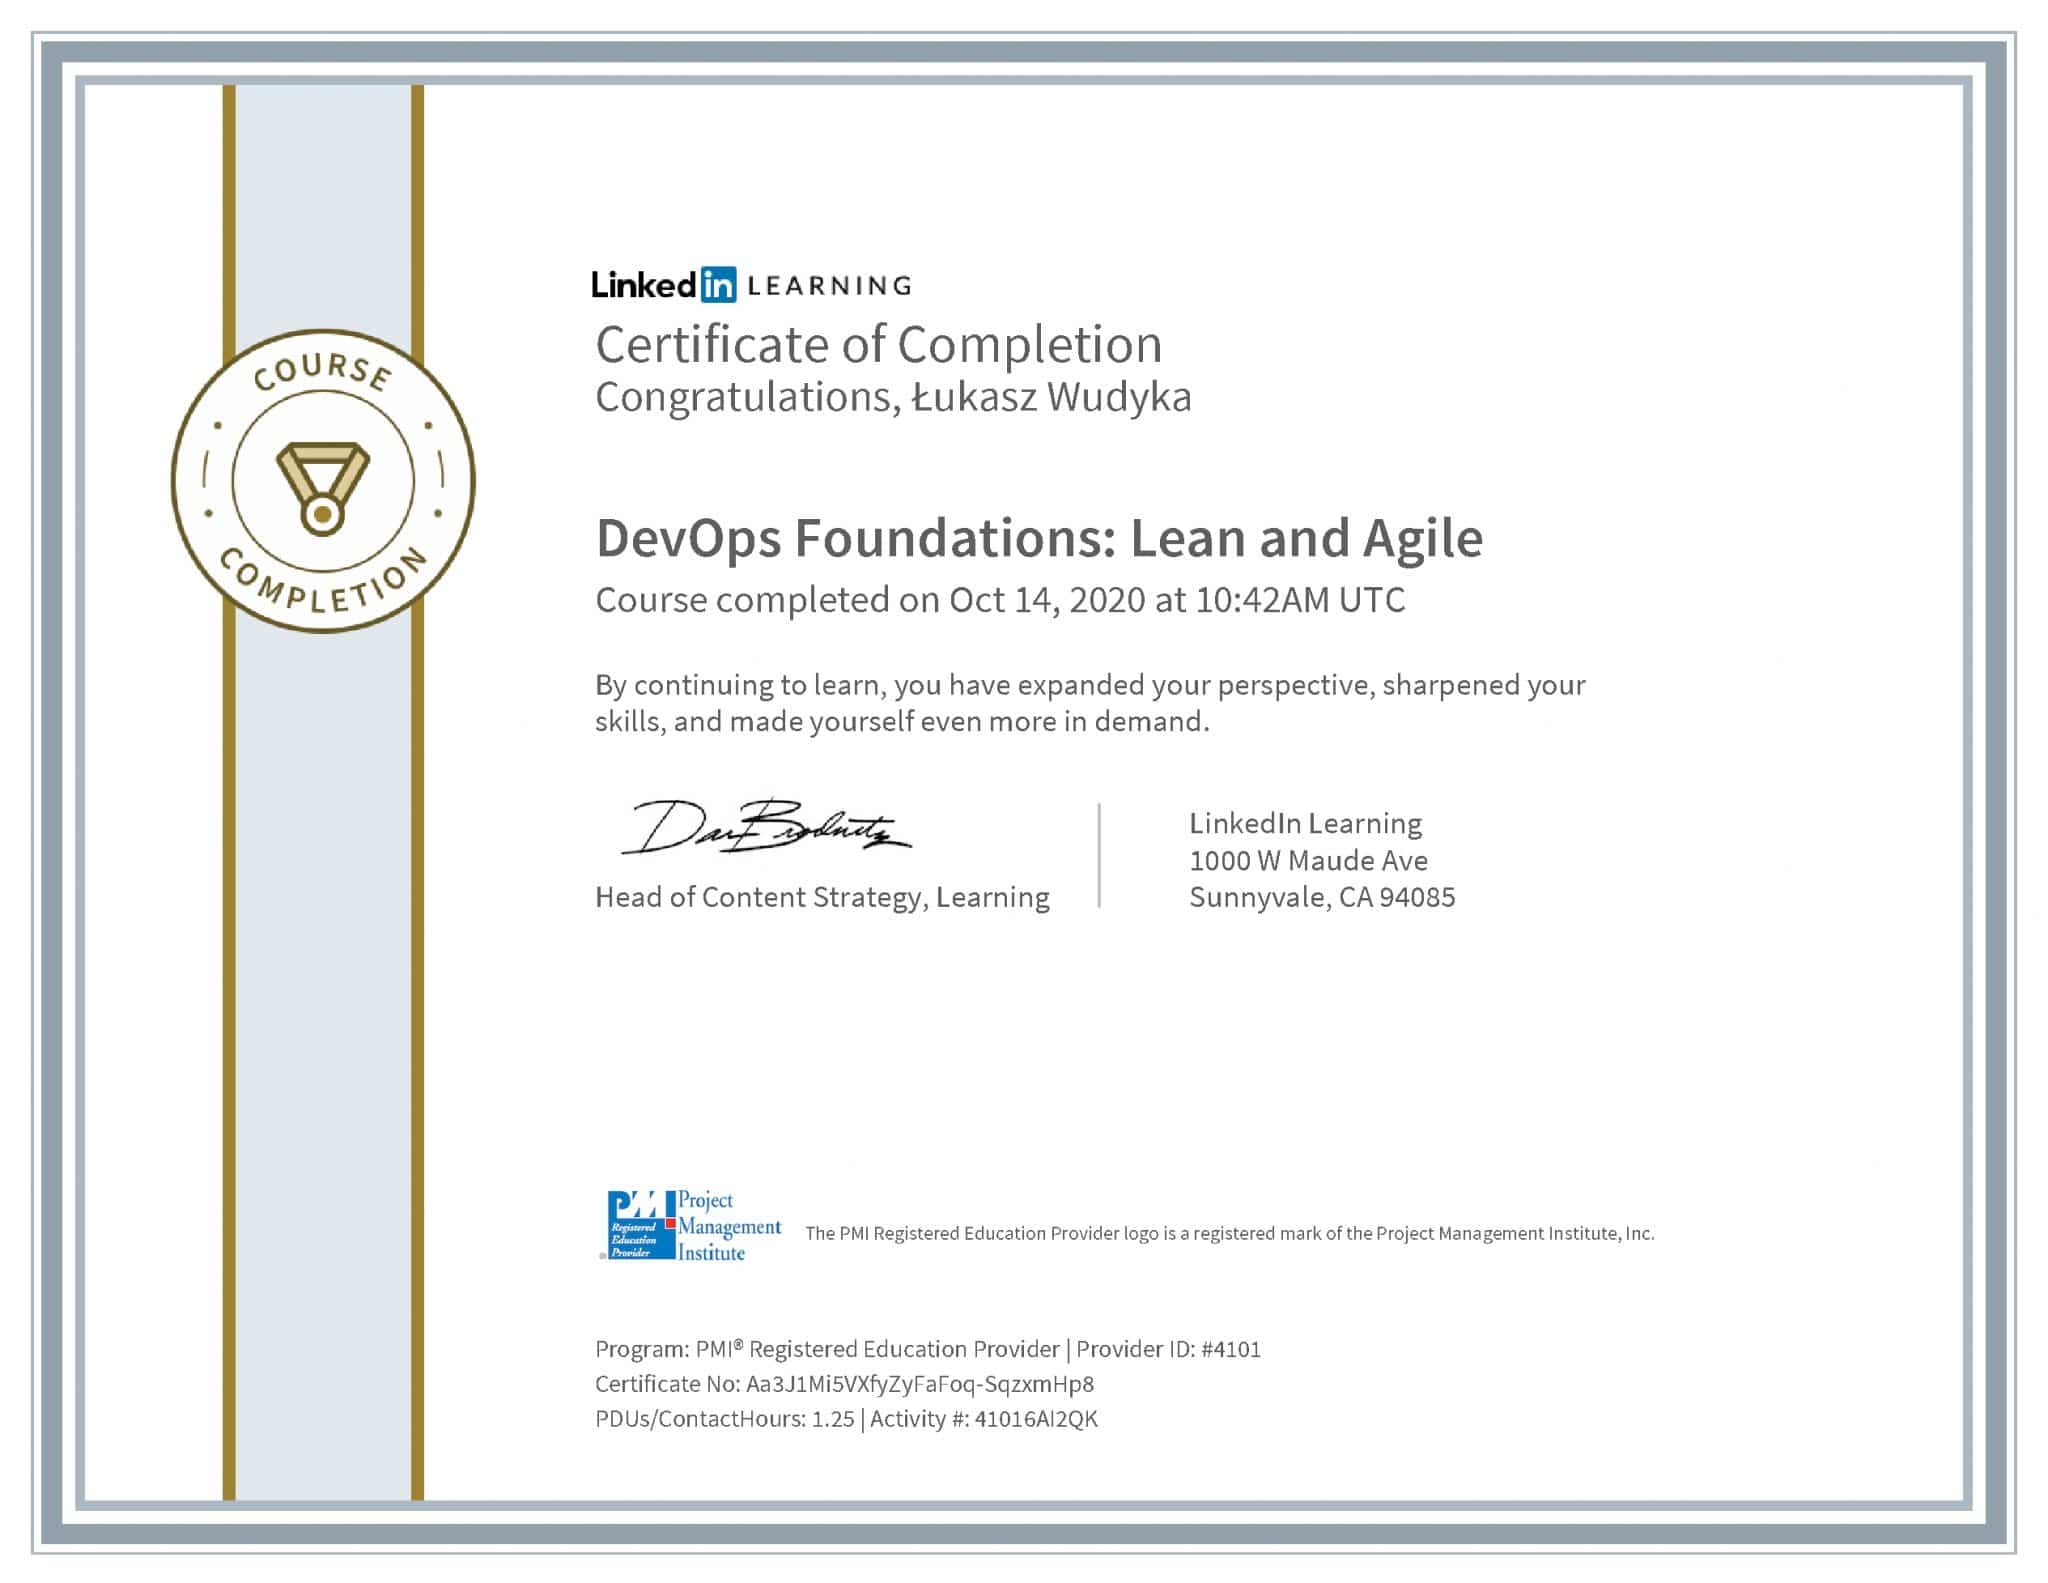 Łukasz Wudyka certyfikat LinkedIn DevOps Foundations: Lean and Agile PMI